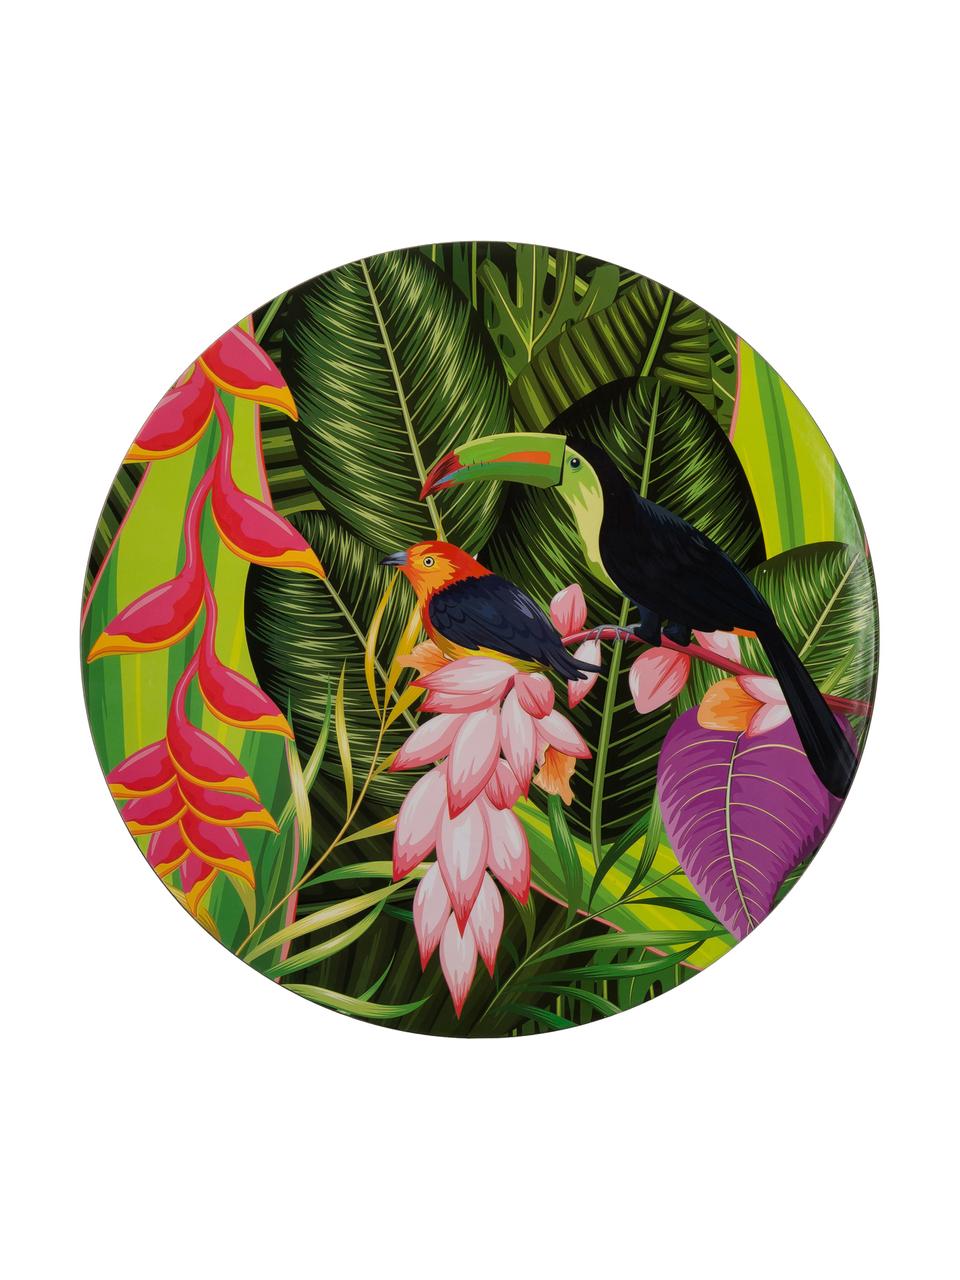 Piatti piani Tropical Bird, 2 pz., Polipropilene, con carta rivestito, Verde, rosa, lilla, arancione, nero, Ø 33 cm